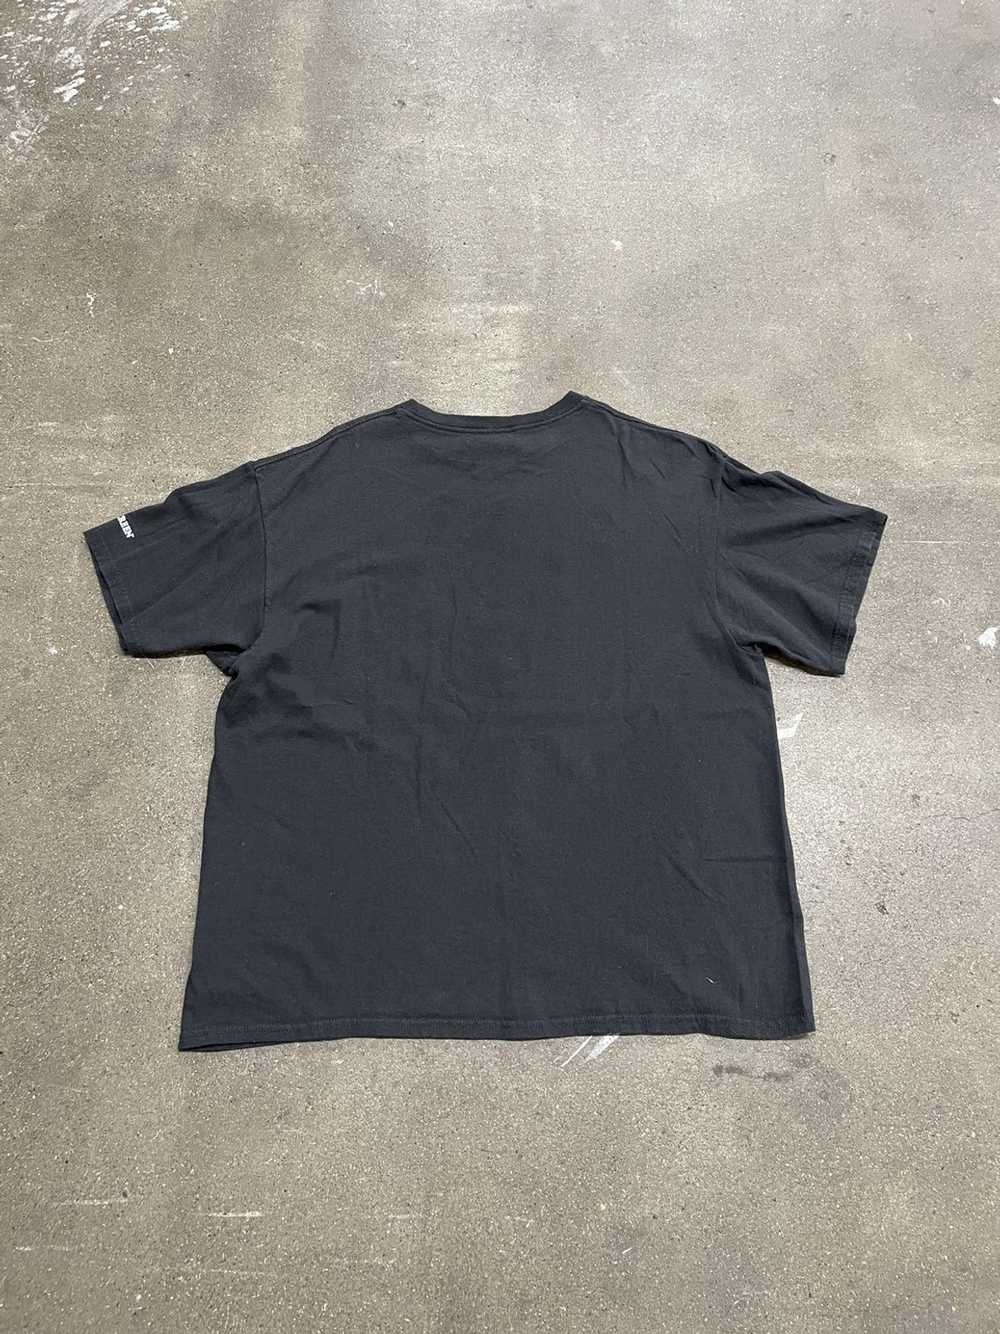 Movie × Streetwear Fury 2014 Movie Promo T-Shirt - image 3